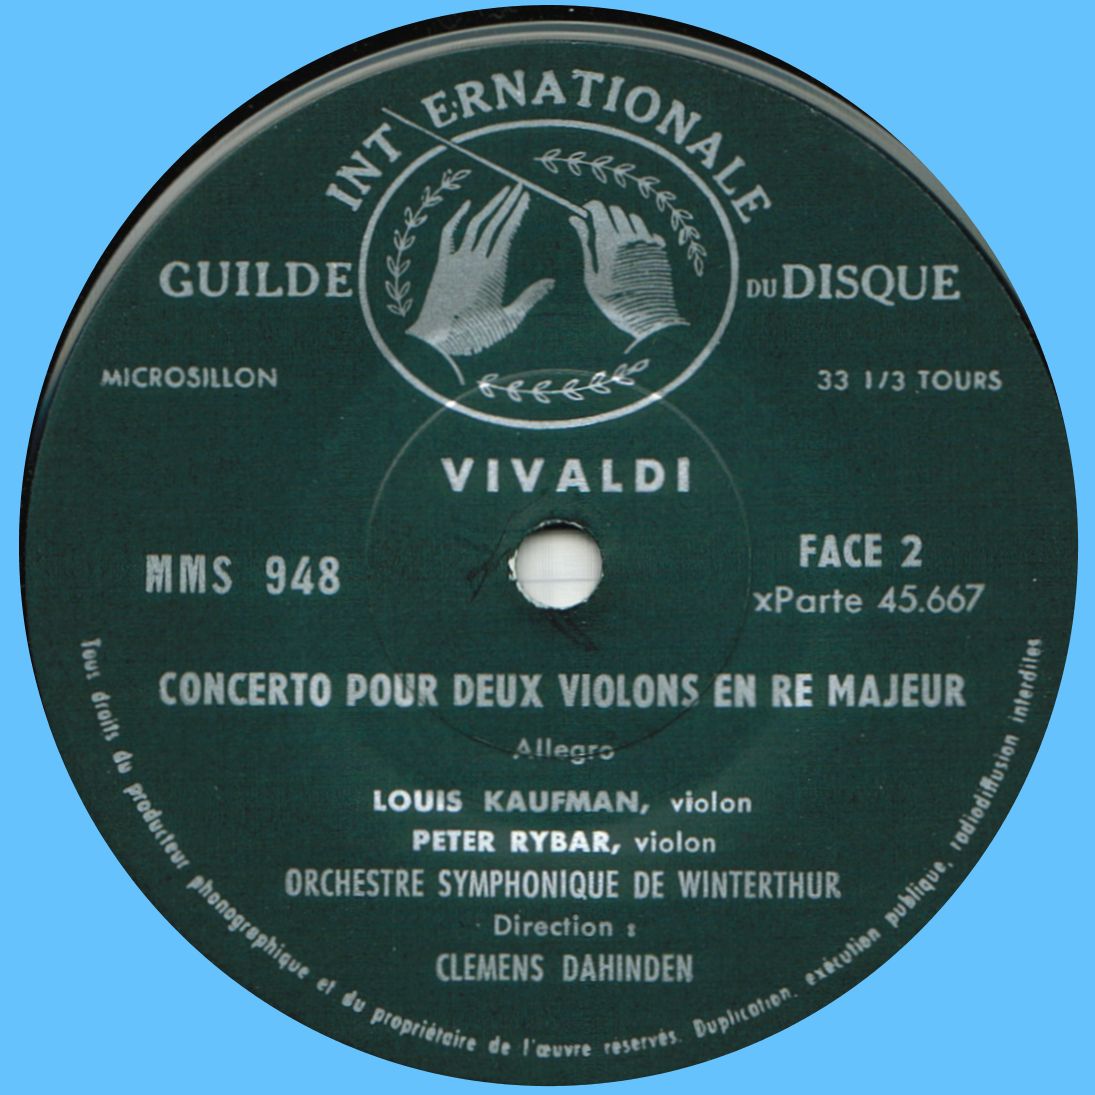 Guilde Internationale du Disque MMS 948, étiquette verso